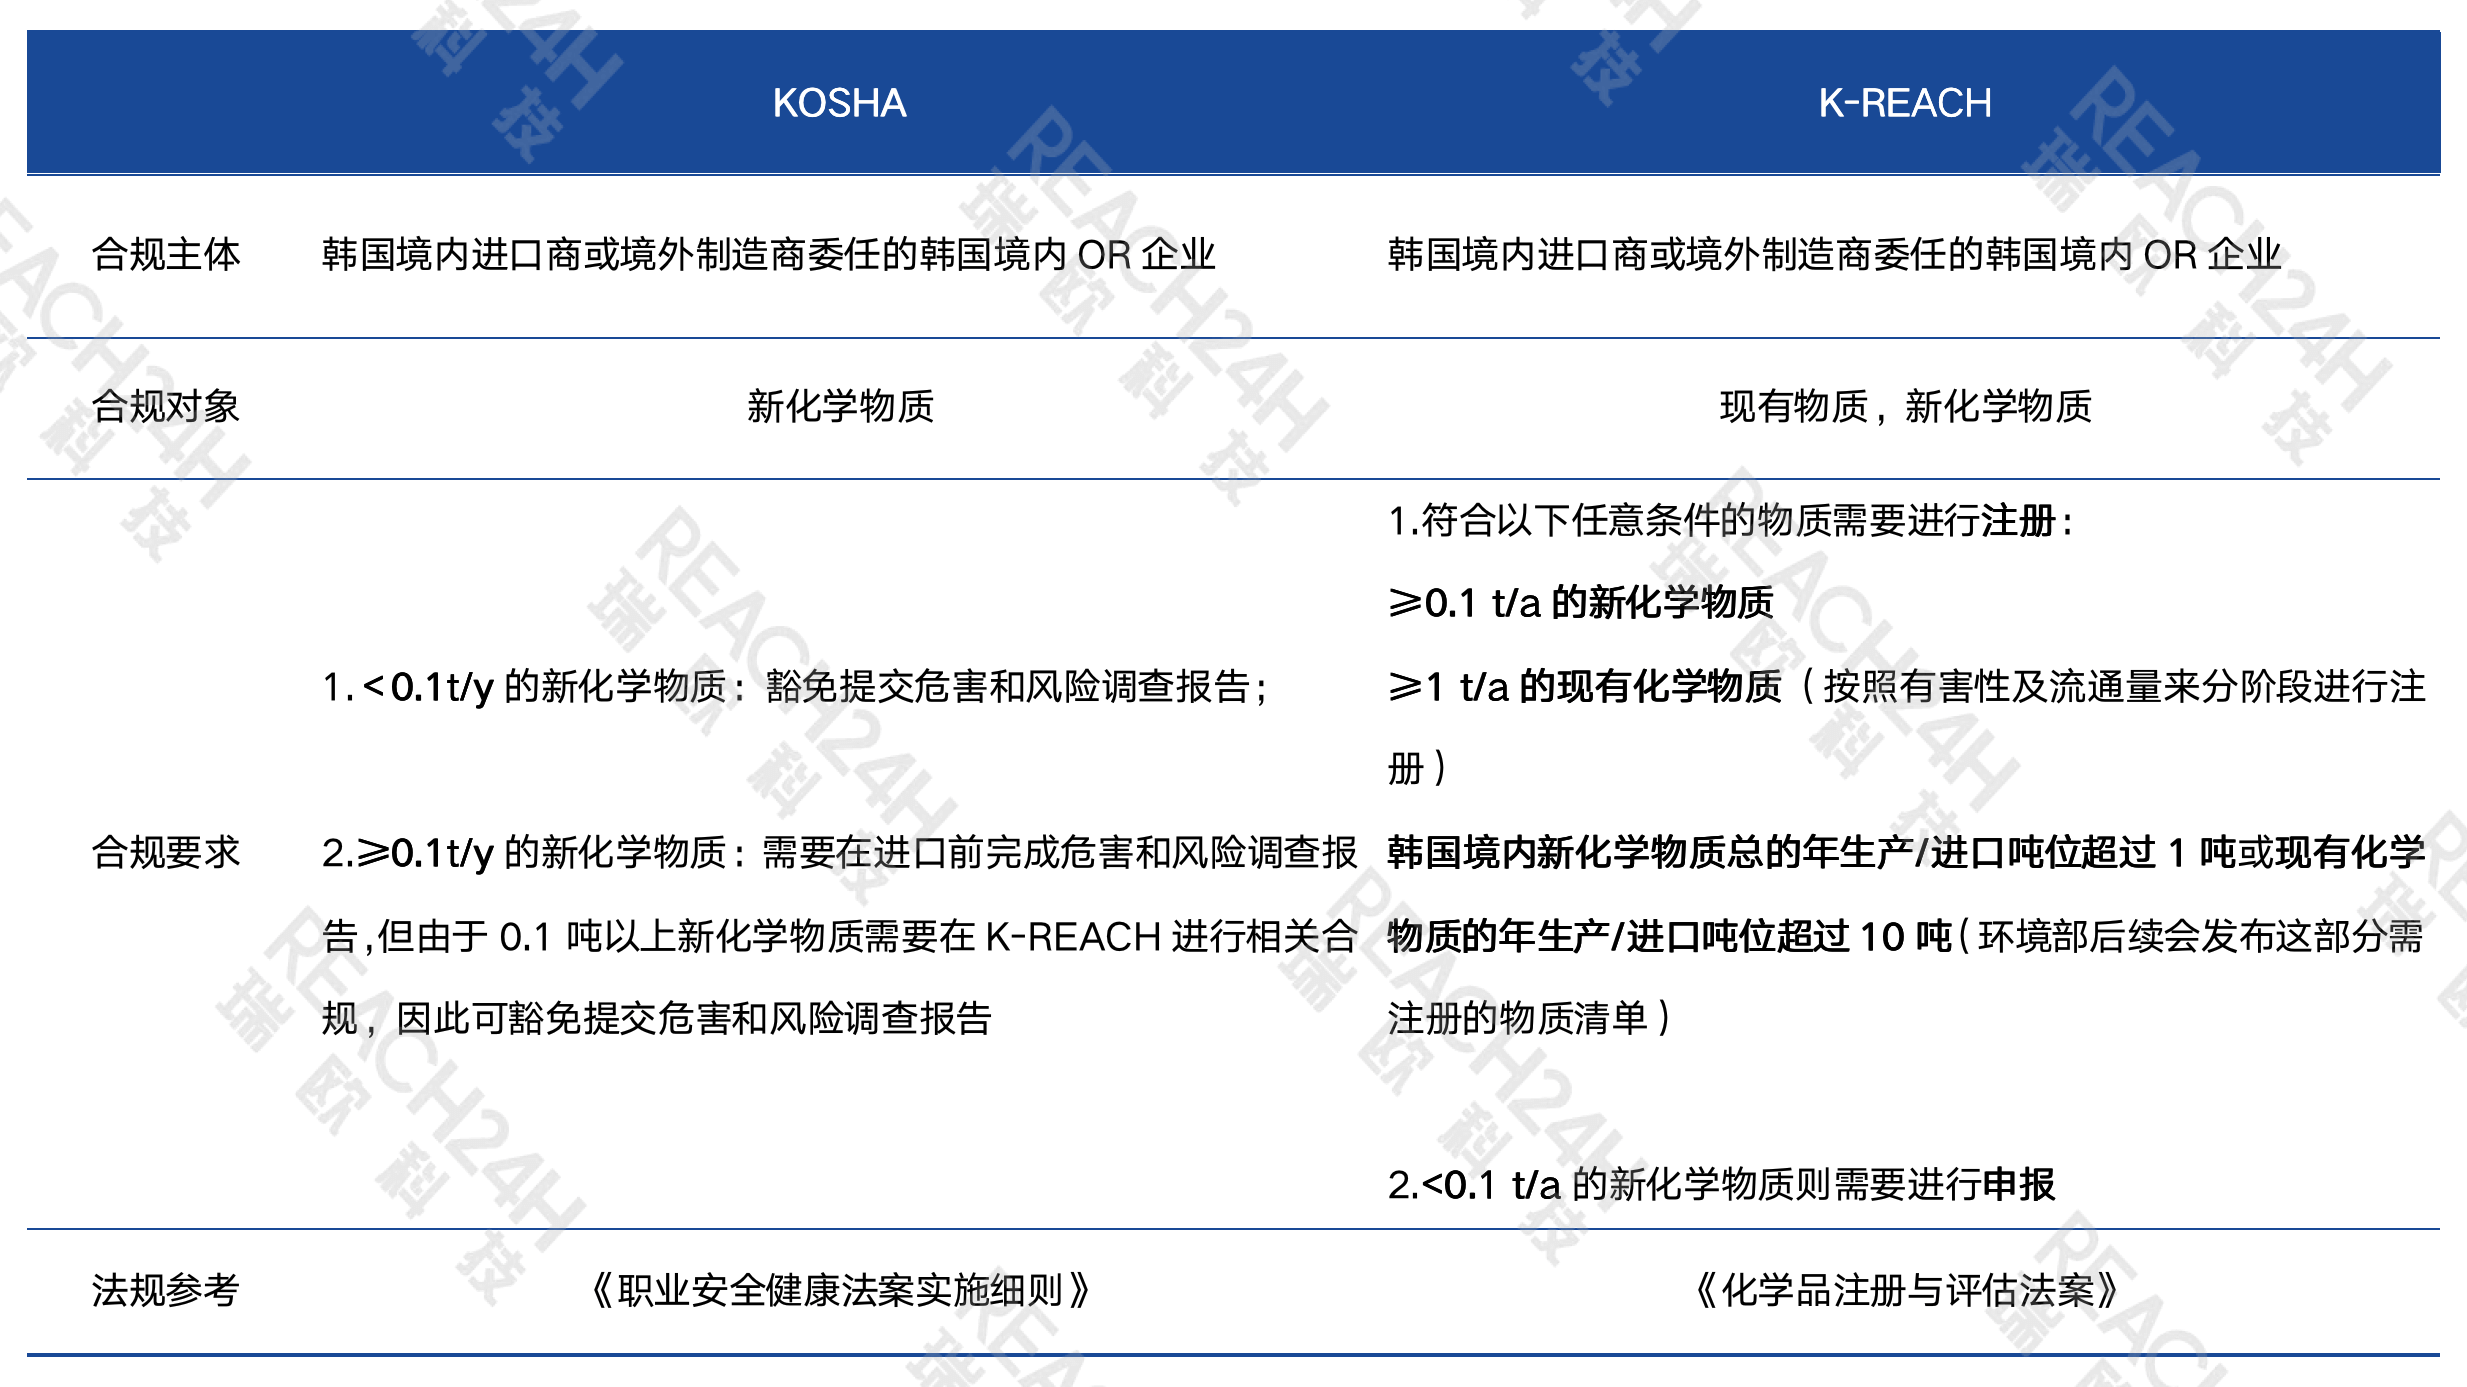 韩国申报/注册物质合规要求